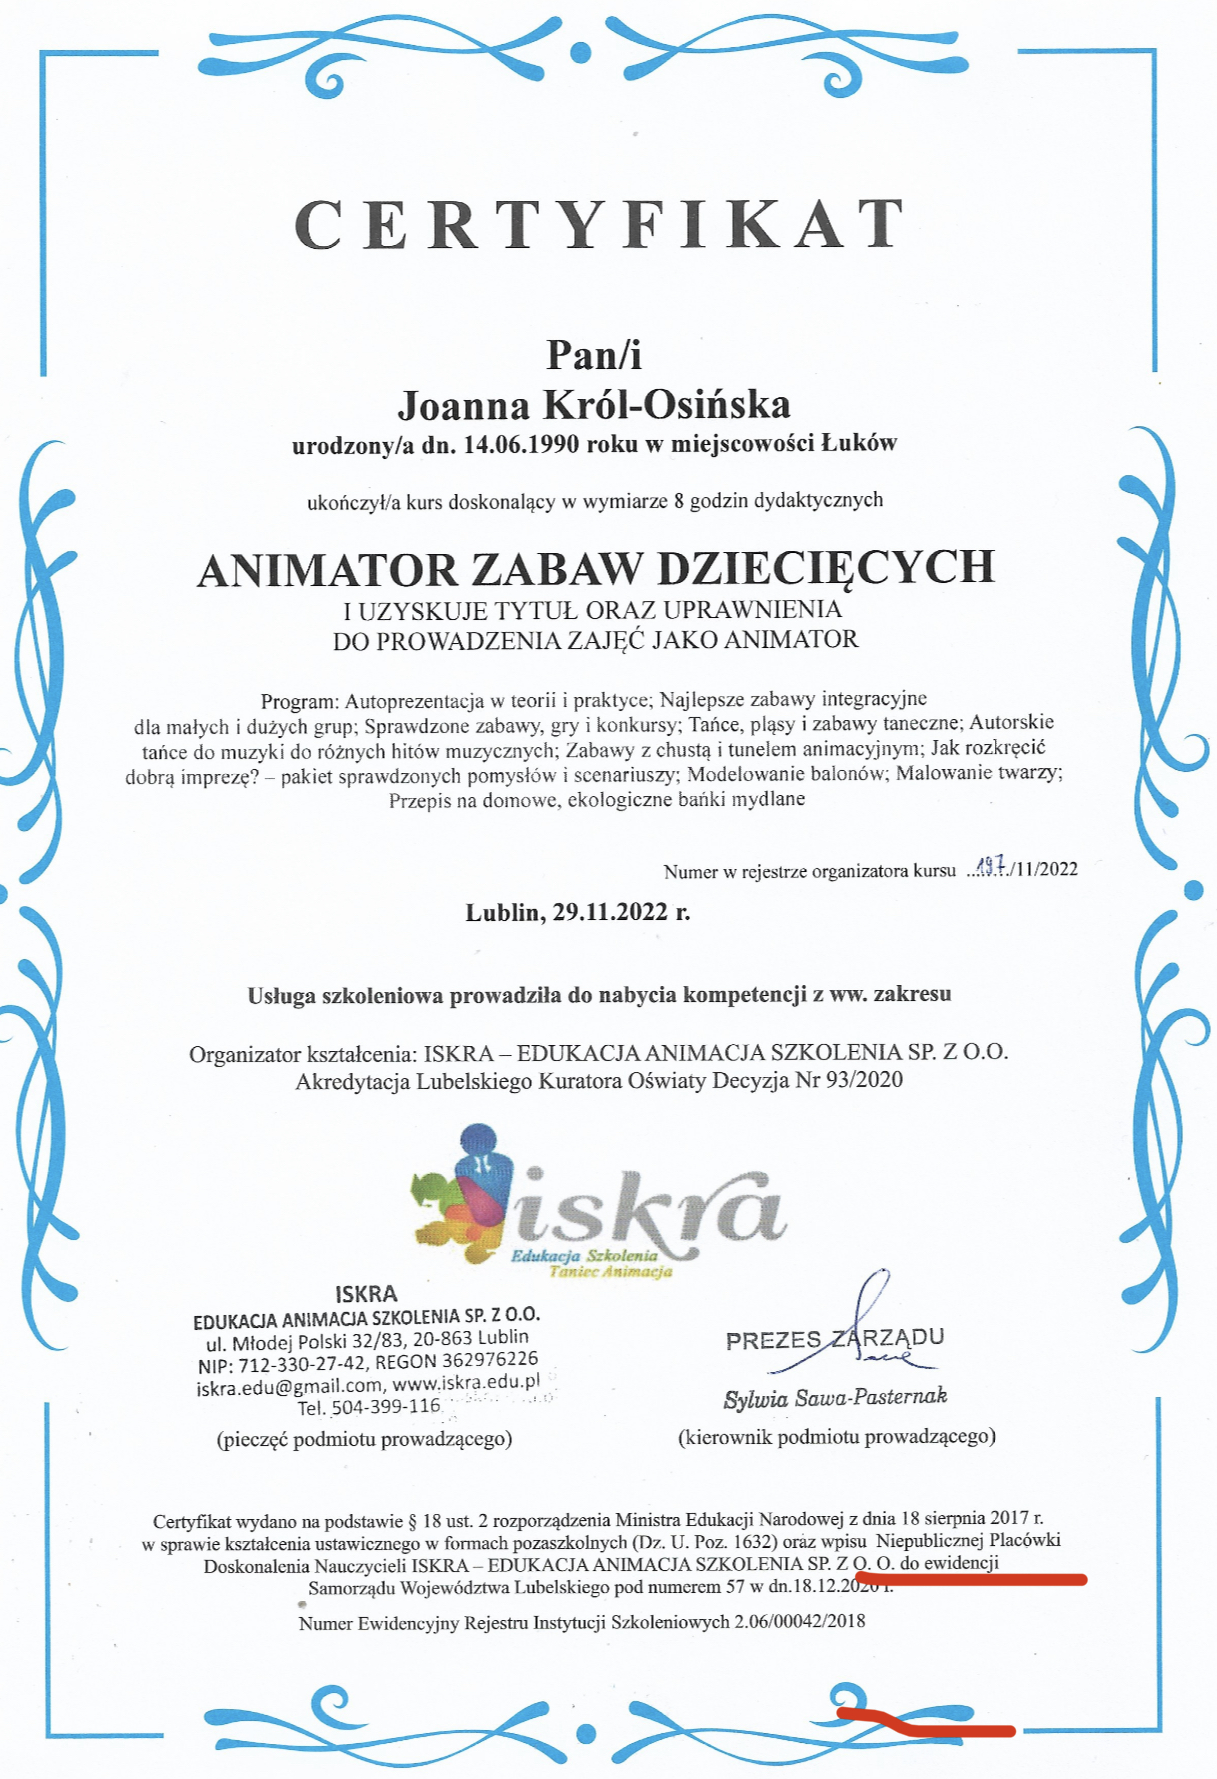 Animator zabaw dziecięcych Joanna Król-Osińska Certyfikat